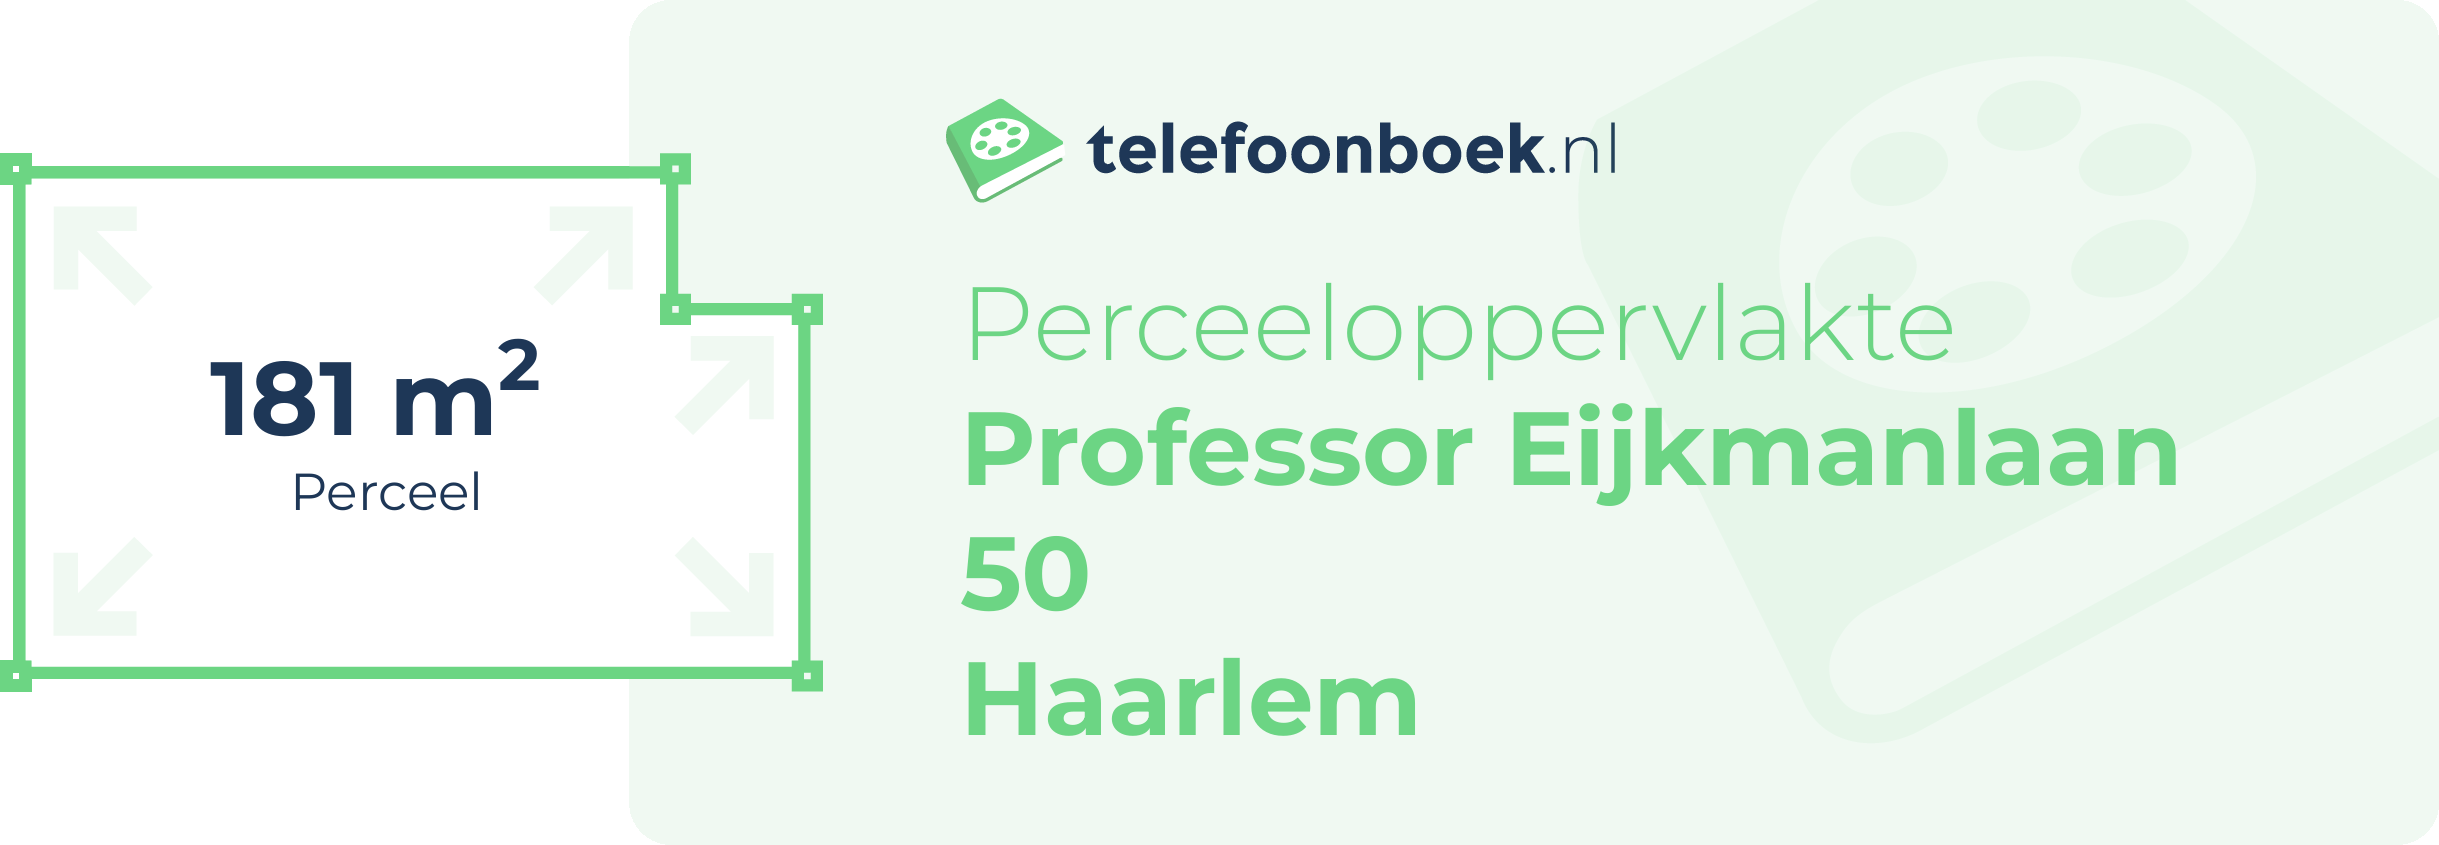 Perceeloppervlakte Professor Eijkmanlaan 50 Haarlem